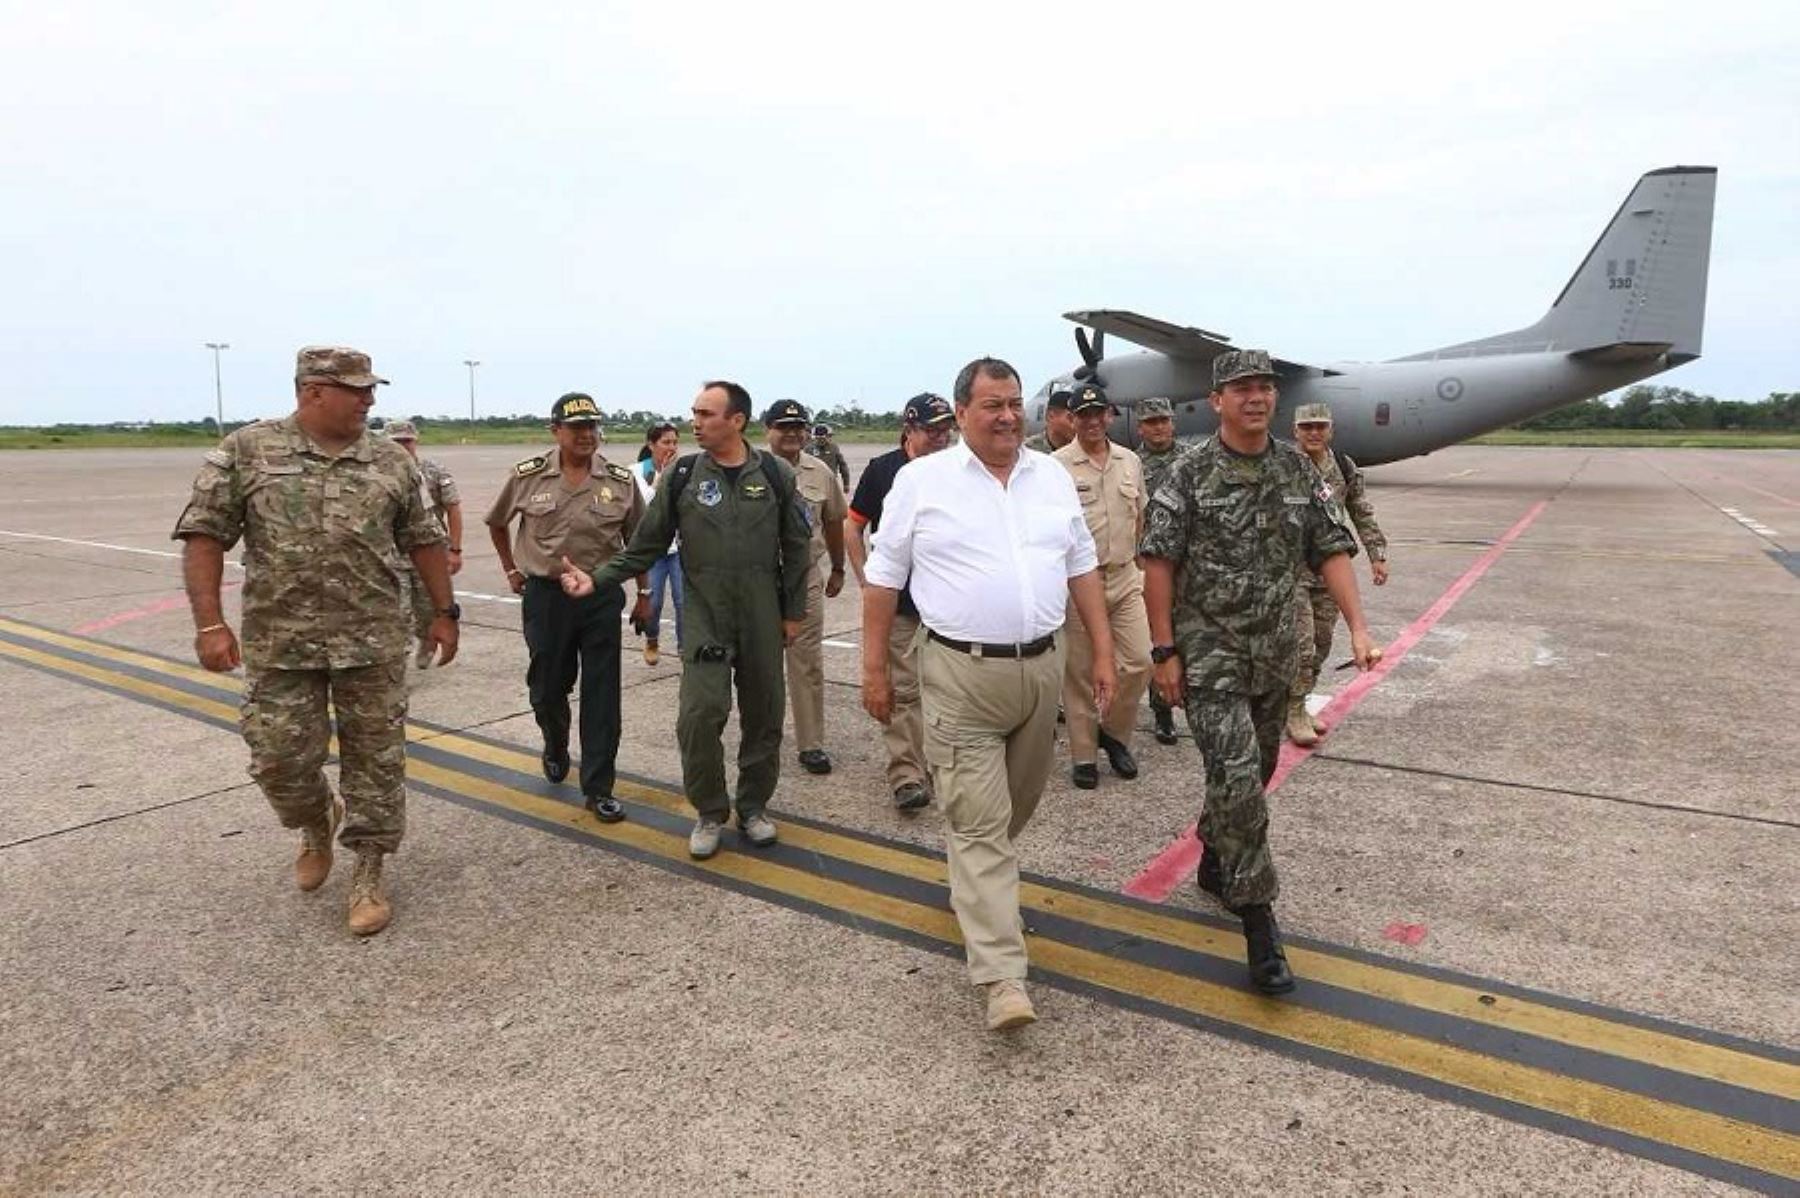 Ministro de Defensa, Jorge Nieto llega al A.H.Playa Hermosa en distrito de Belén, Iquitos, para supervisar acción cívica y entrega de ayuda humanitaria.